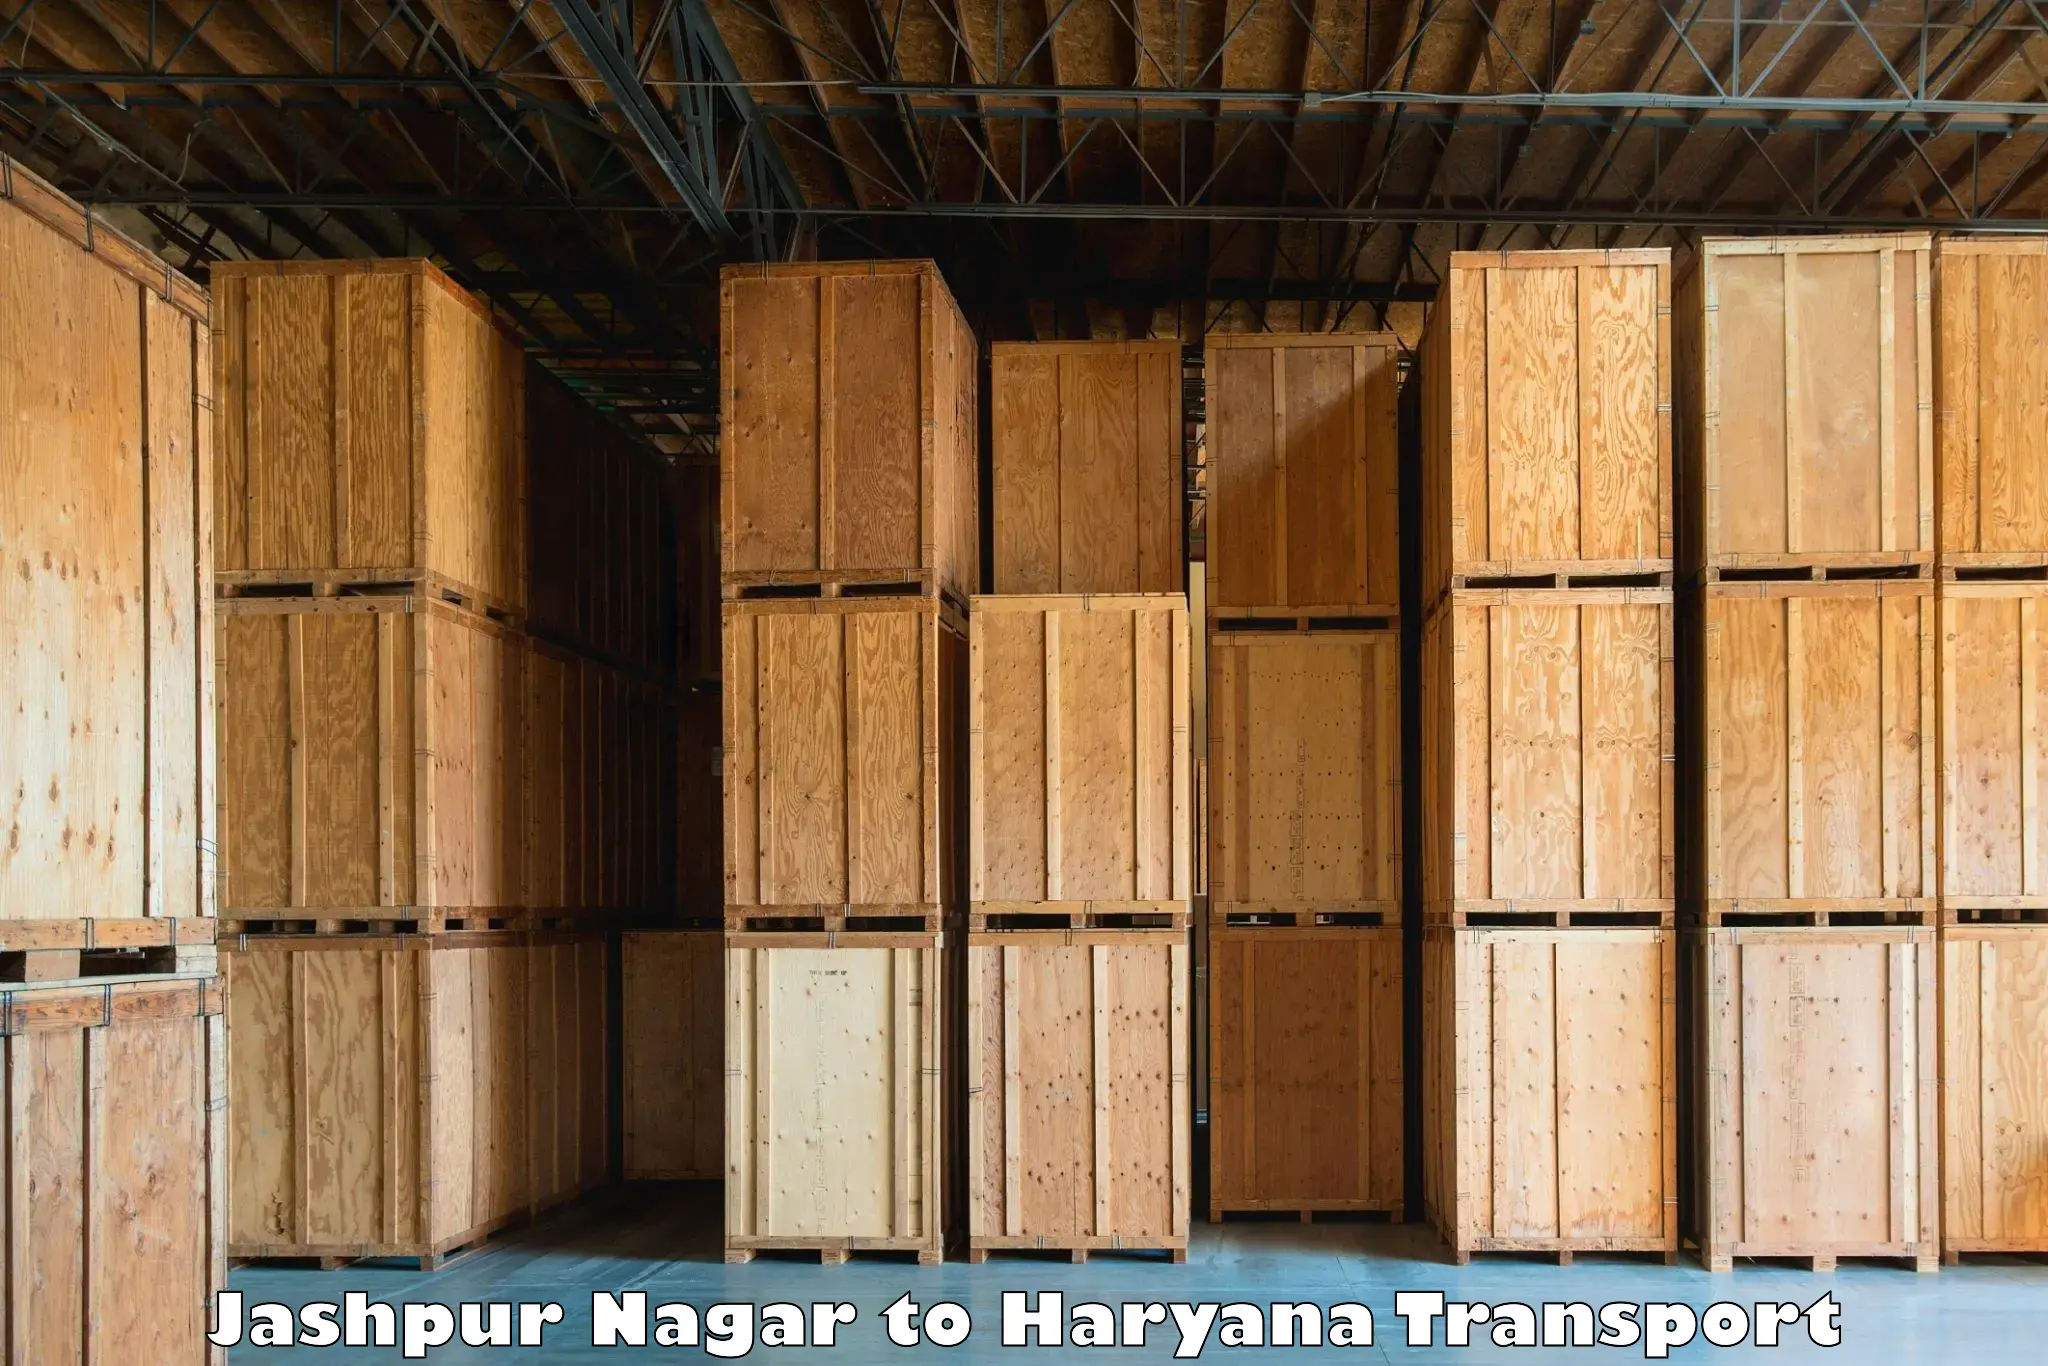 Shipping partner Jashpur Nagar to Haryana